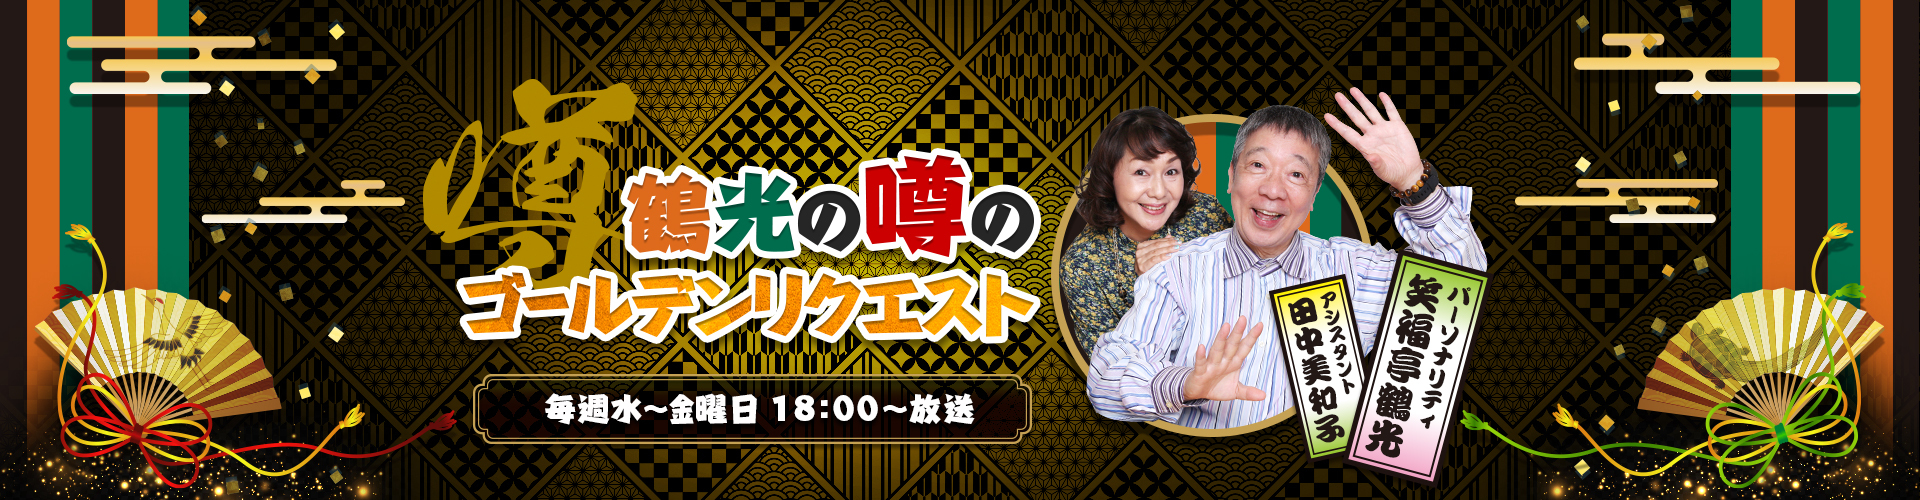 鶴光の噂のゴールデンリクエスト | ニッポン放送 ラジオAM1242+FM93